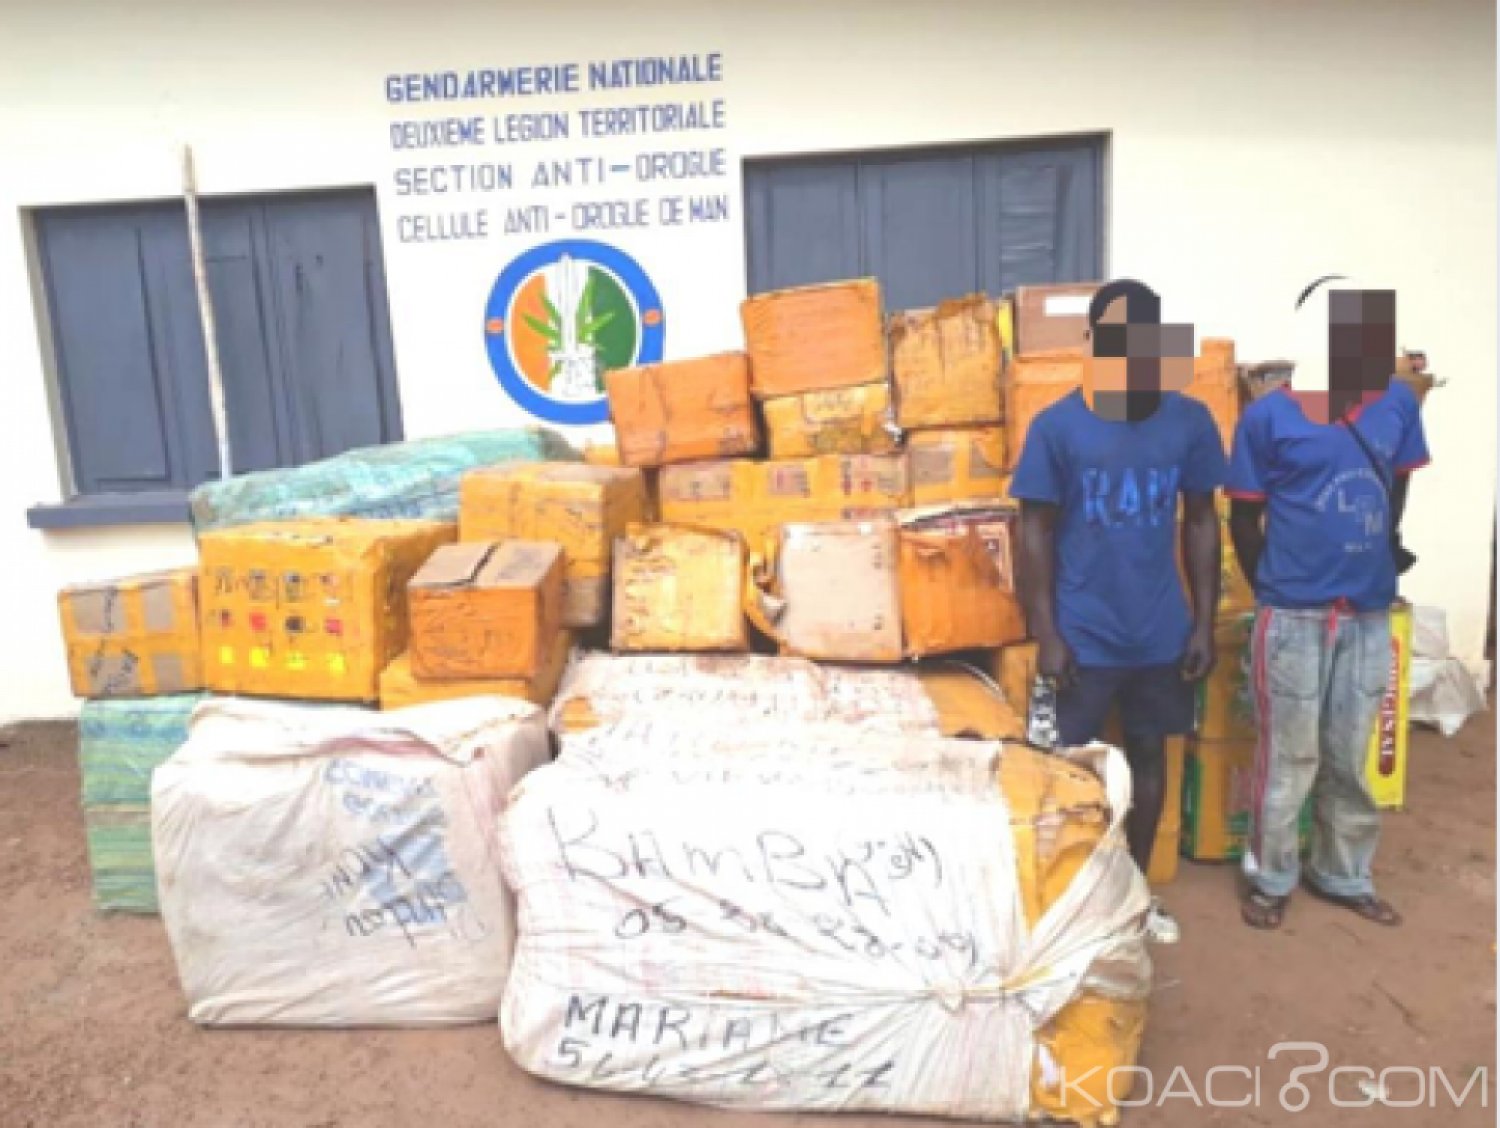 Côte d'Ivoire : Un entrepôt de médicaments de qualité inférieure falsifié découvert dans un village de l'ouest, deux suspects  interpellés